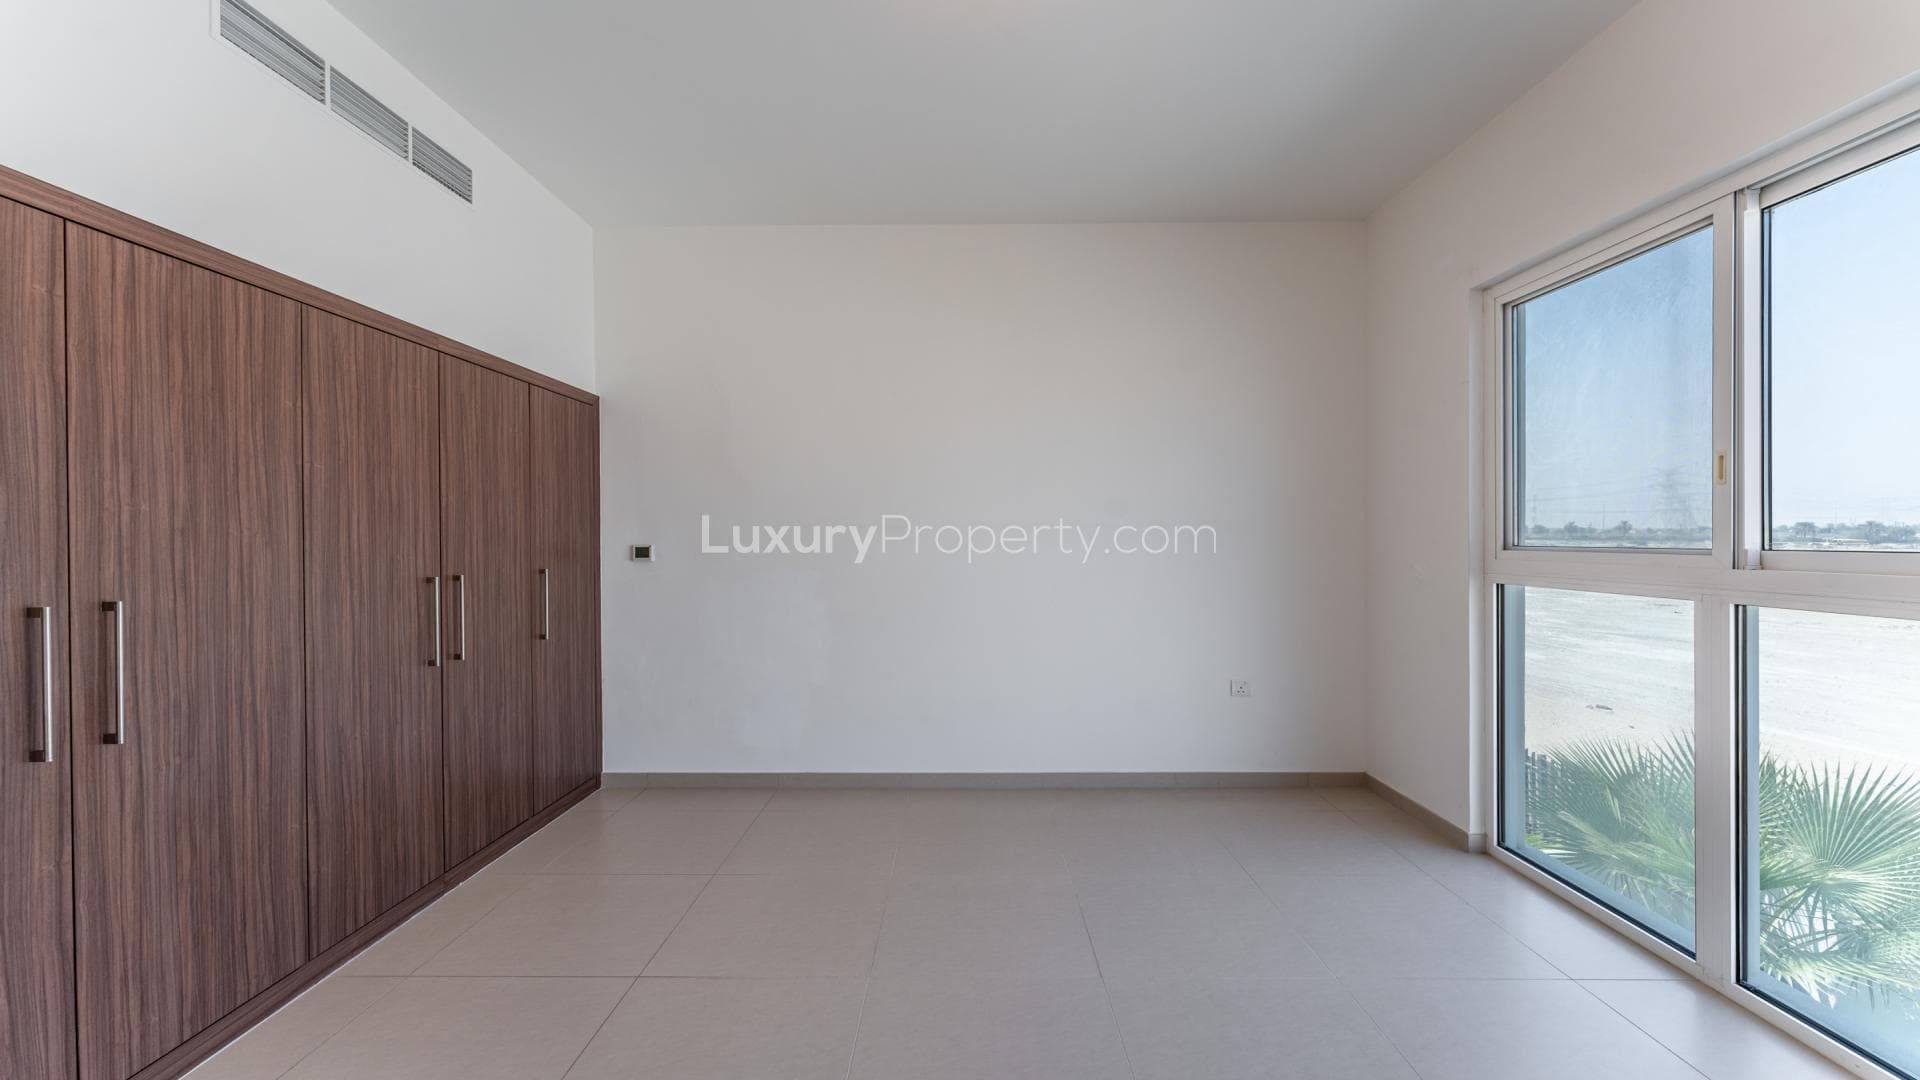 5 Bedroom Villa For Sale Al Kazim Tower 1 Lp37350 205a2ab3d76c4200.jpg